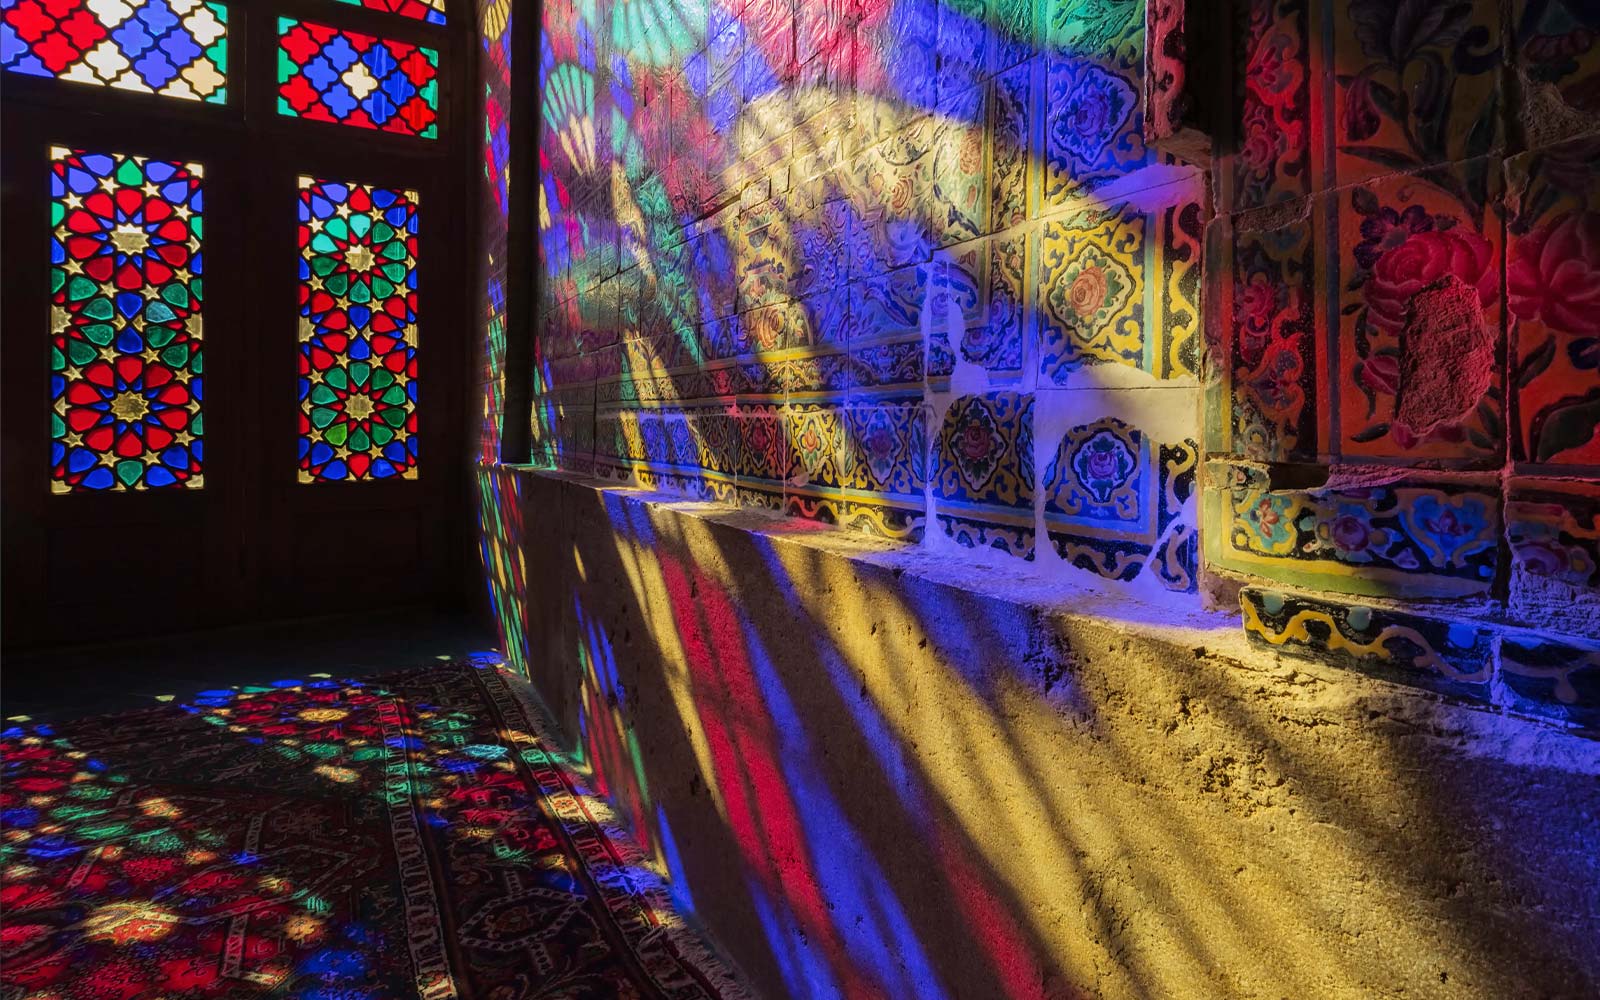 Prizor, ki prikazuje svetlobo, ki seva skozi vitraže in odseva barve na steni (predvajanje videa).